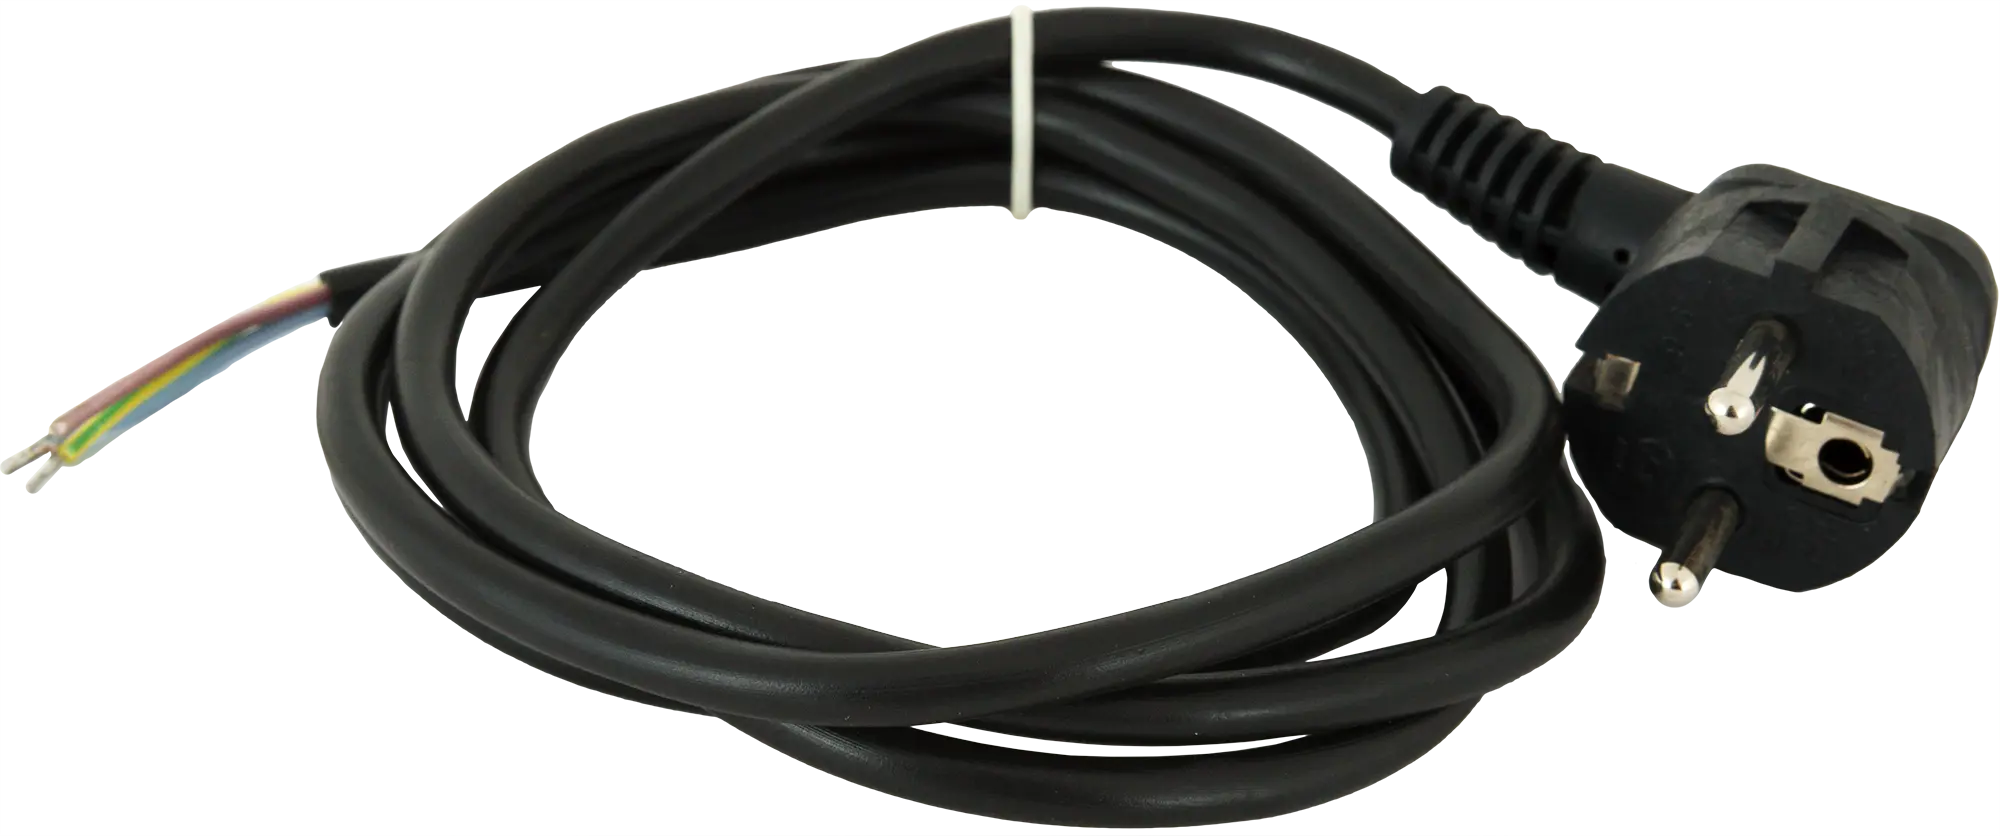 Шнур сетевой с заземлением 16 A 1.5 м цвет чёрный шнур сетевой с заземлением 10 a 1 5 м цвет чёрный